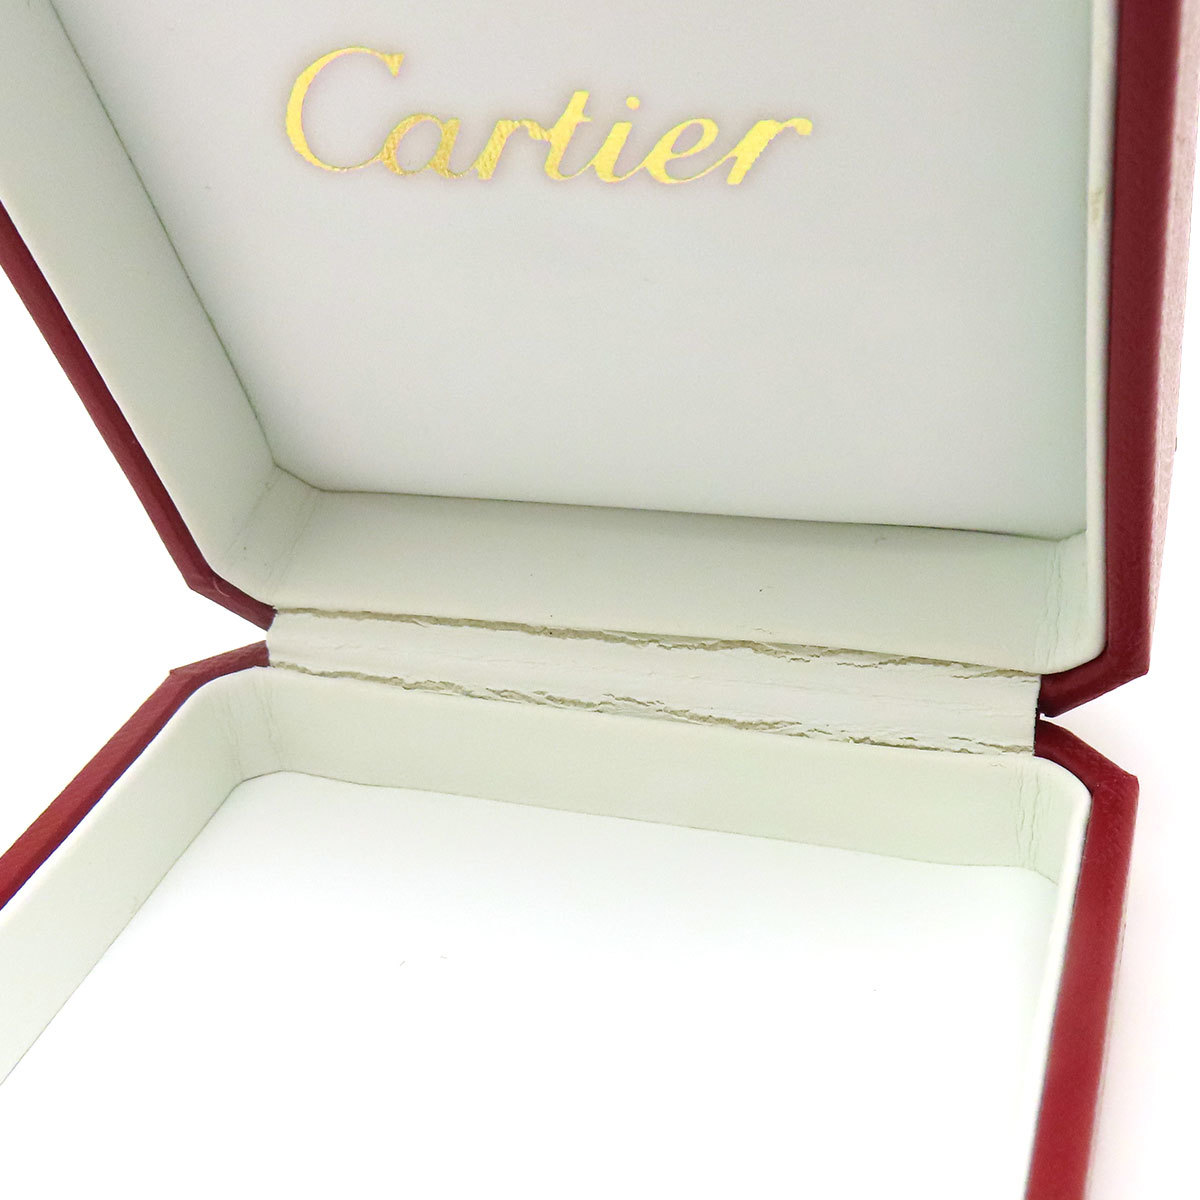  Cartier двойной кольцо кейс унисекс CARTIER б/у [ ювелирные изделия ]